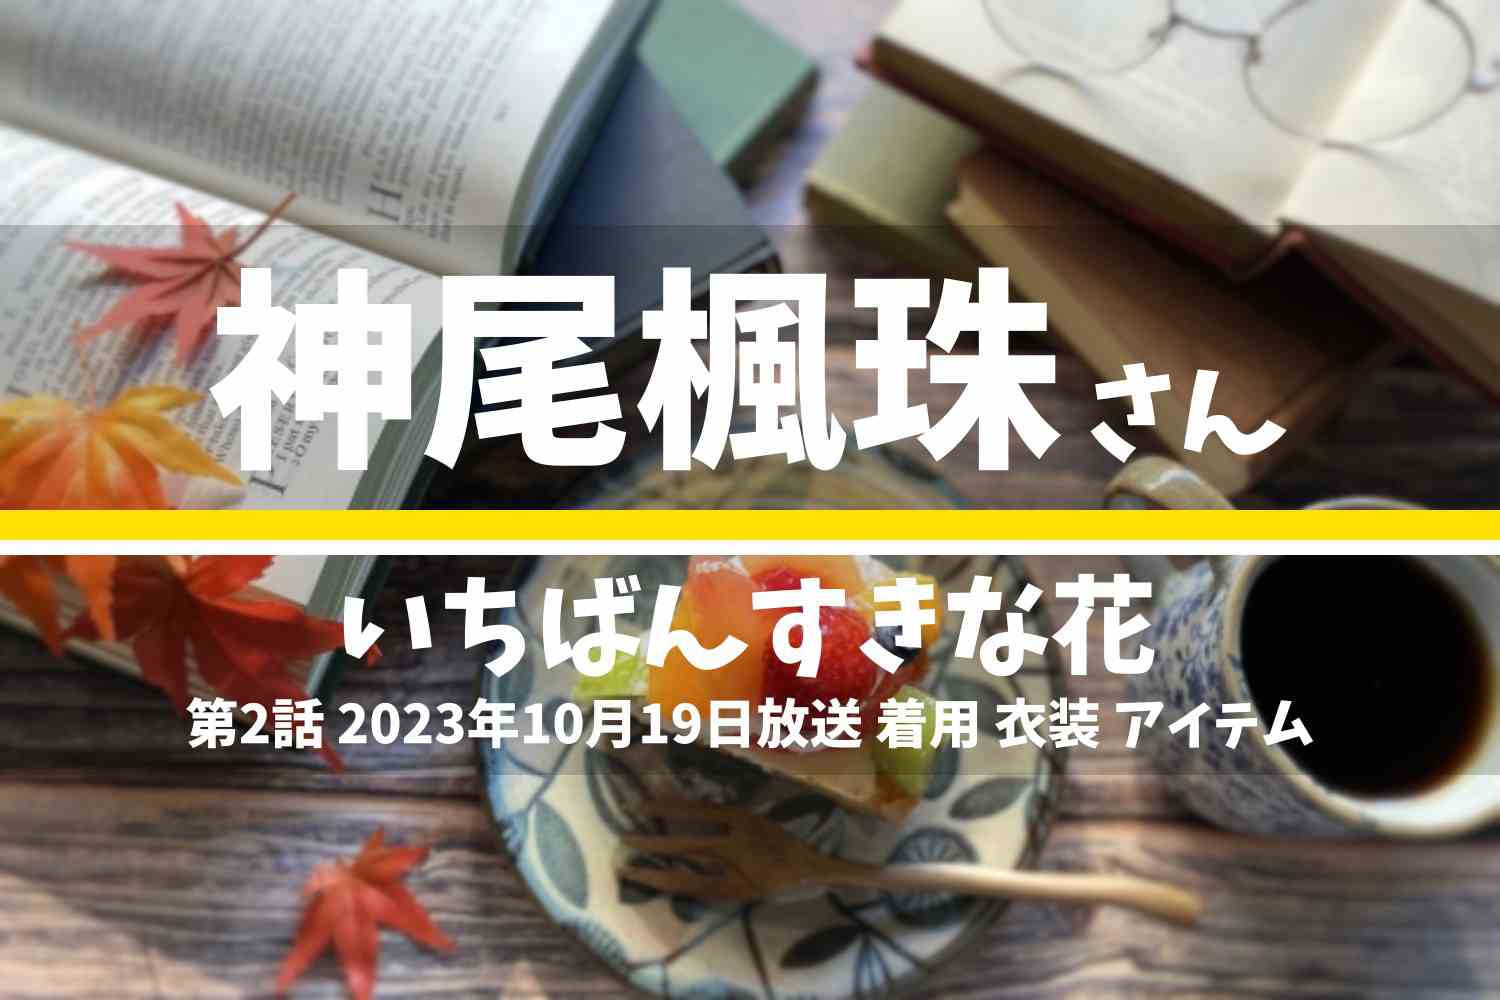 いちばんすきな花 神尾楓珠さん テレビドラマ 衣装 2023年10月19日放送